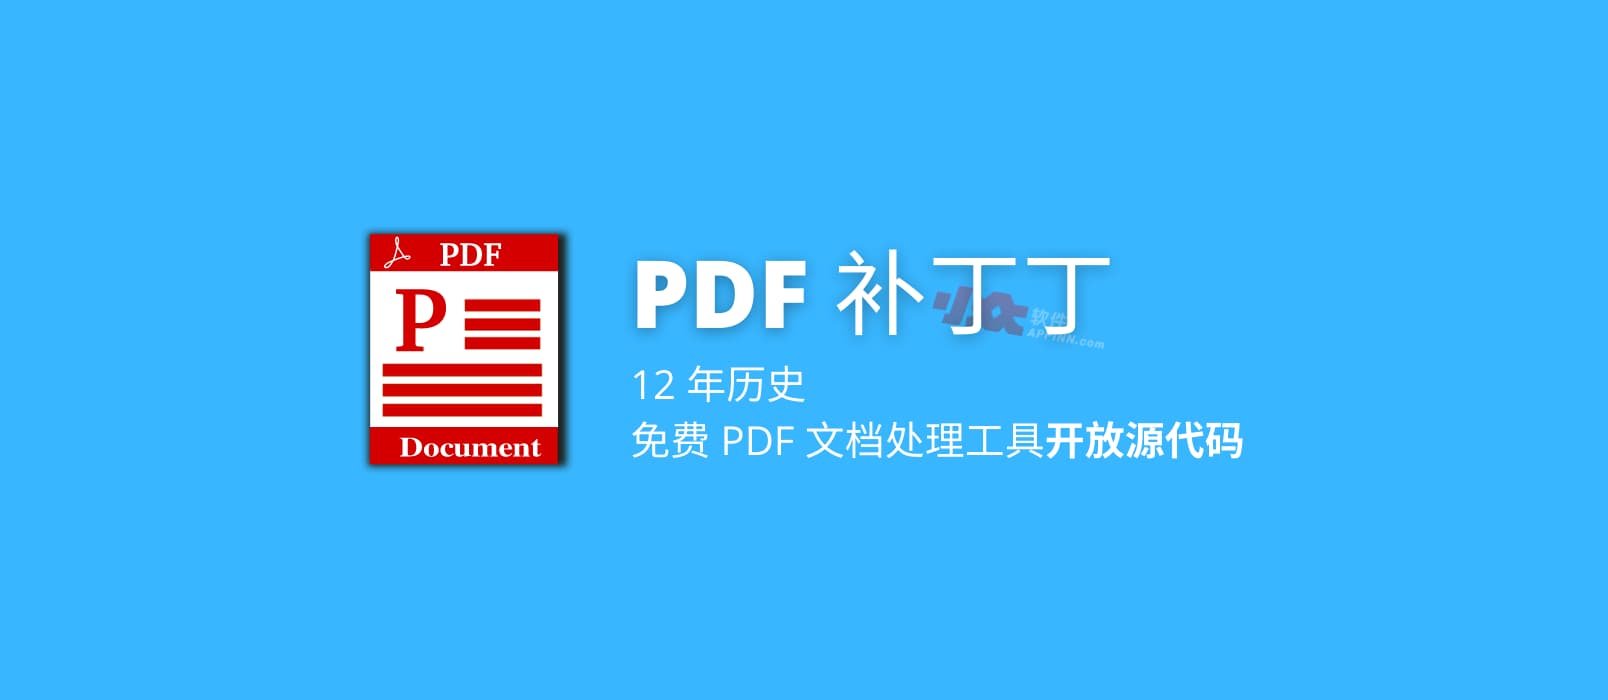 12 年历史，免费 PDF 文档处理工具「PDF 补丁丁」开放源代码 1